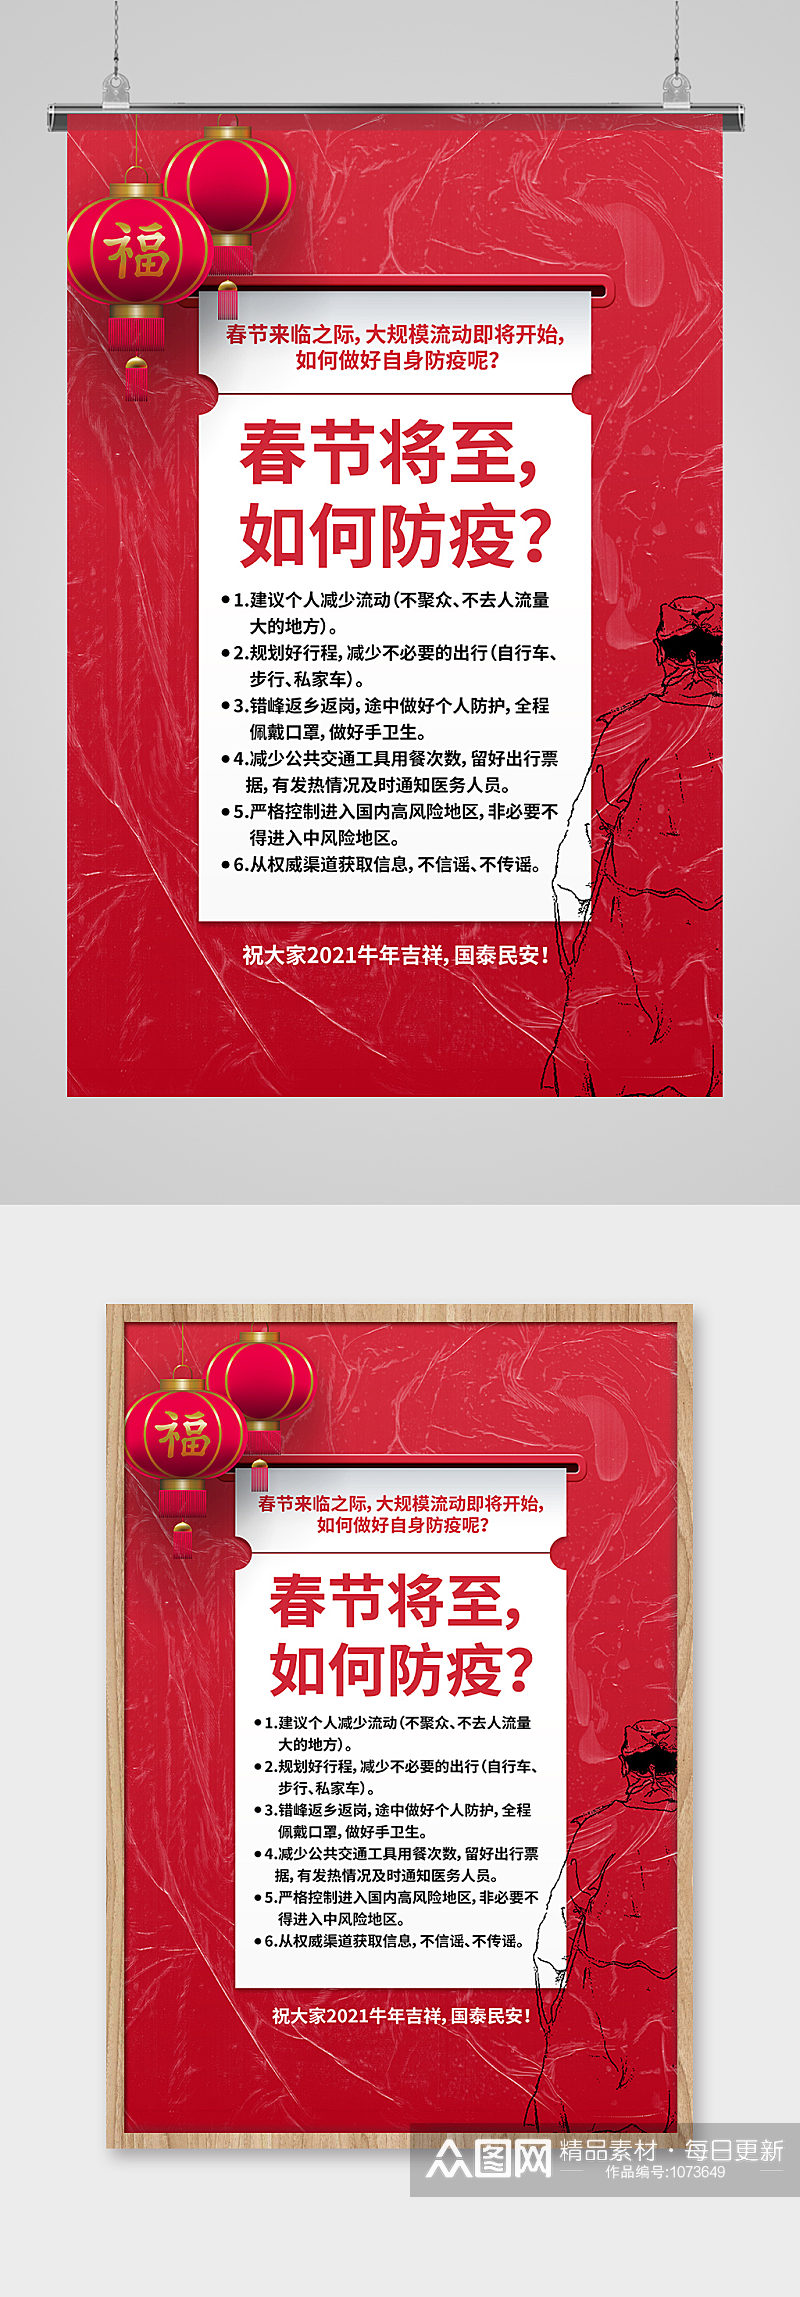 红色通用春节防疫宣传海报素材